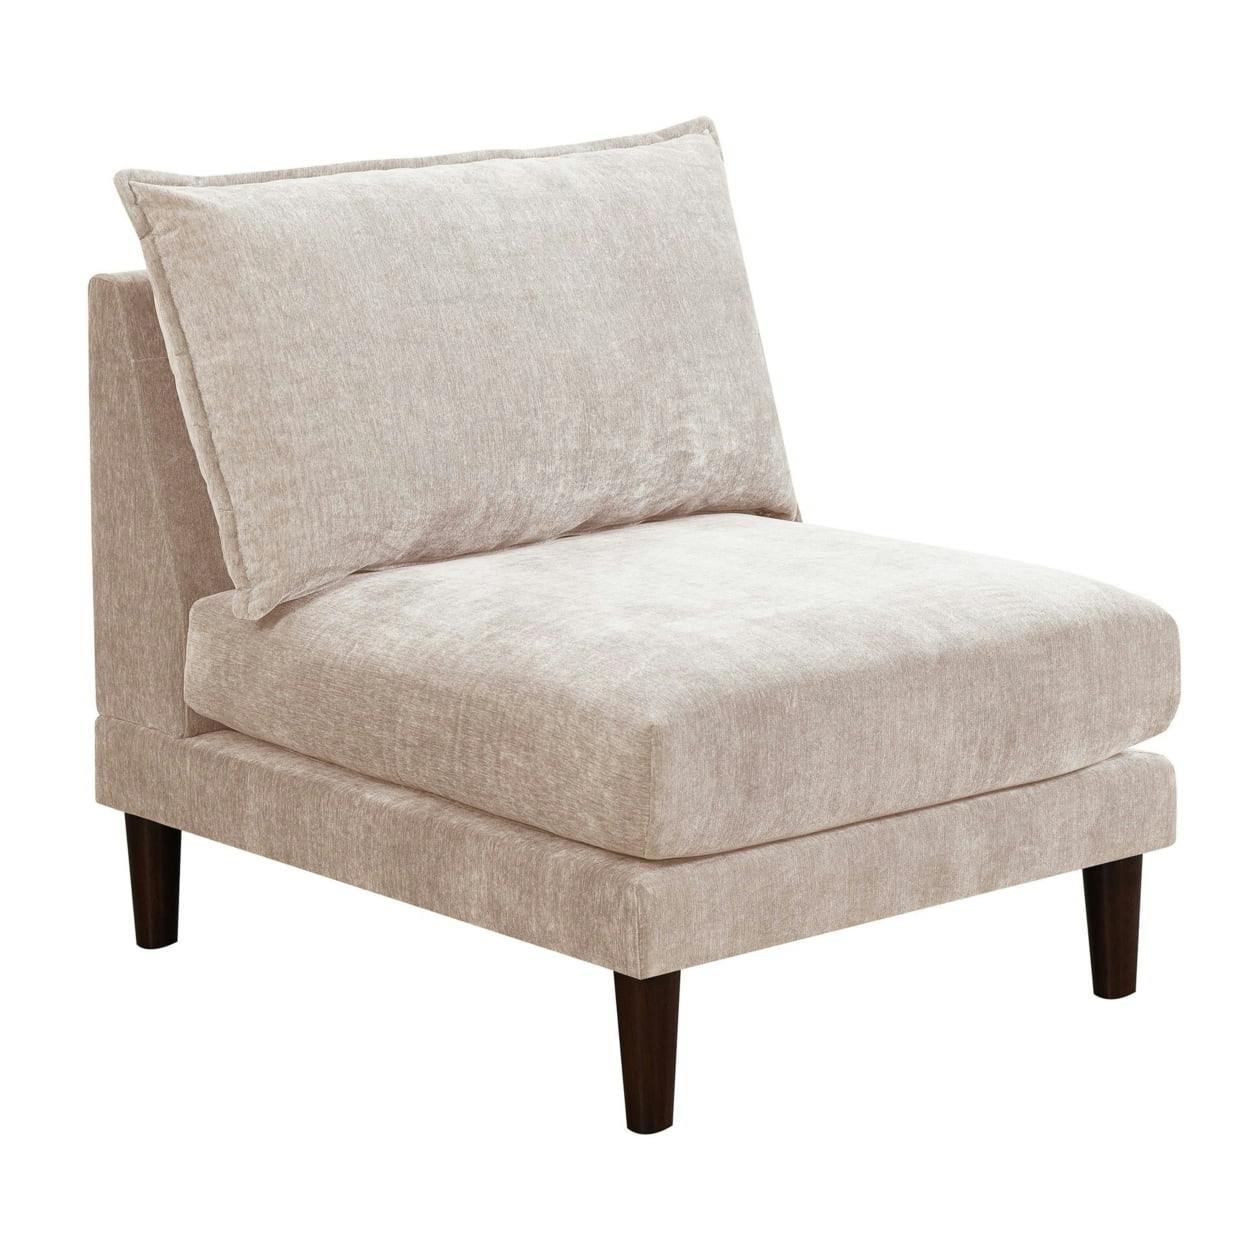 Rio 33" Beige Suede Modular Armless Sofa Chair with Lumbar Cushion